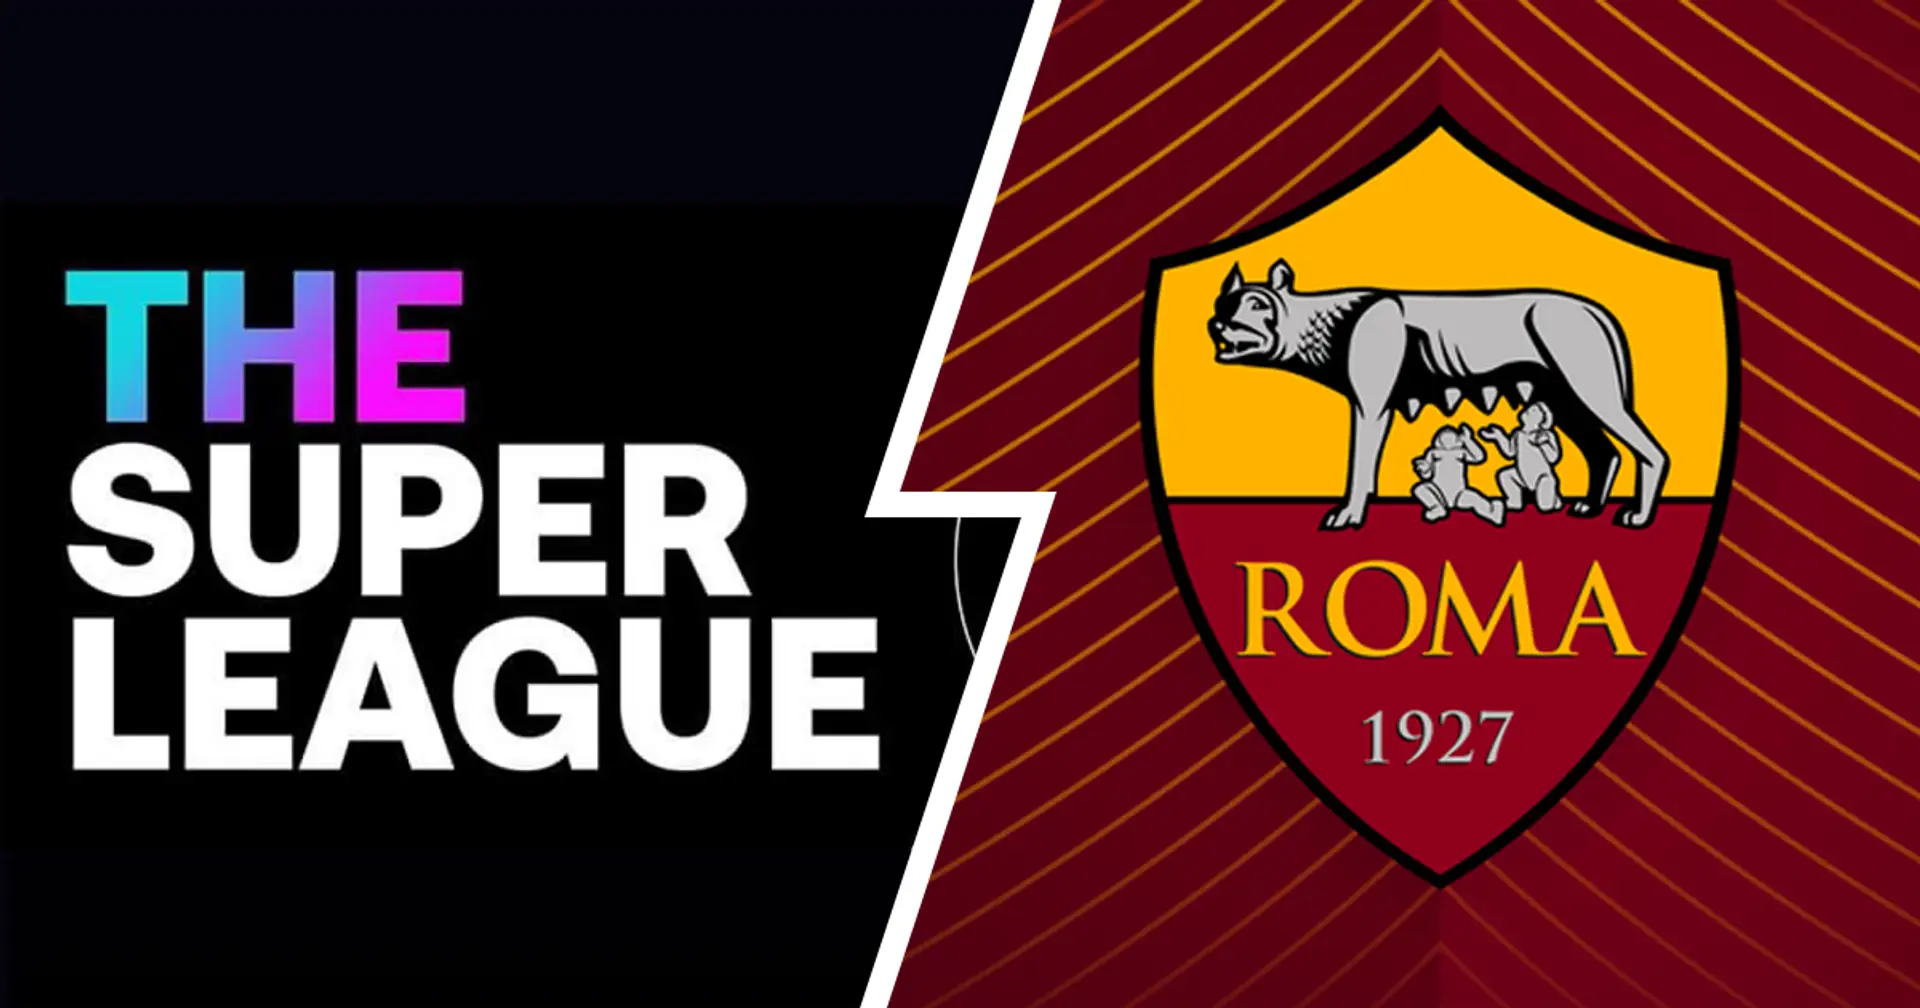 La Roma en Super League ? Absolument pas! Le communiqué officiel laisse peu de place à des malentendus